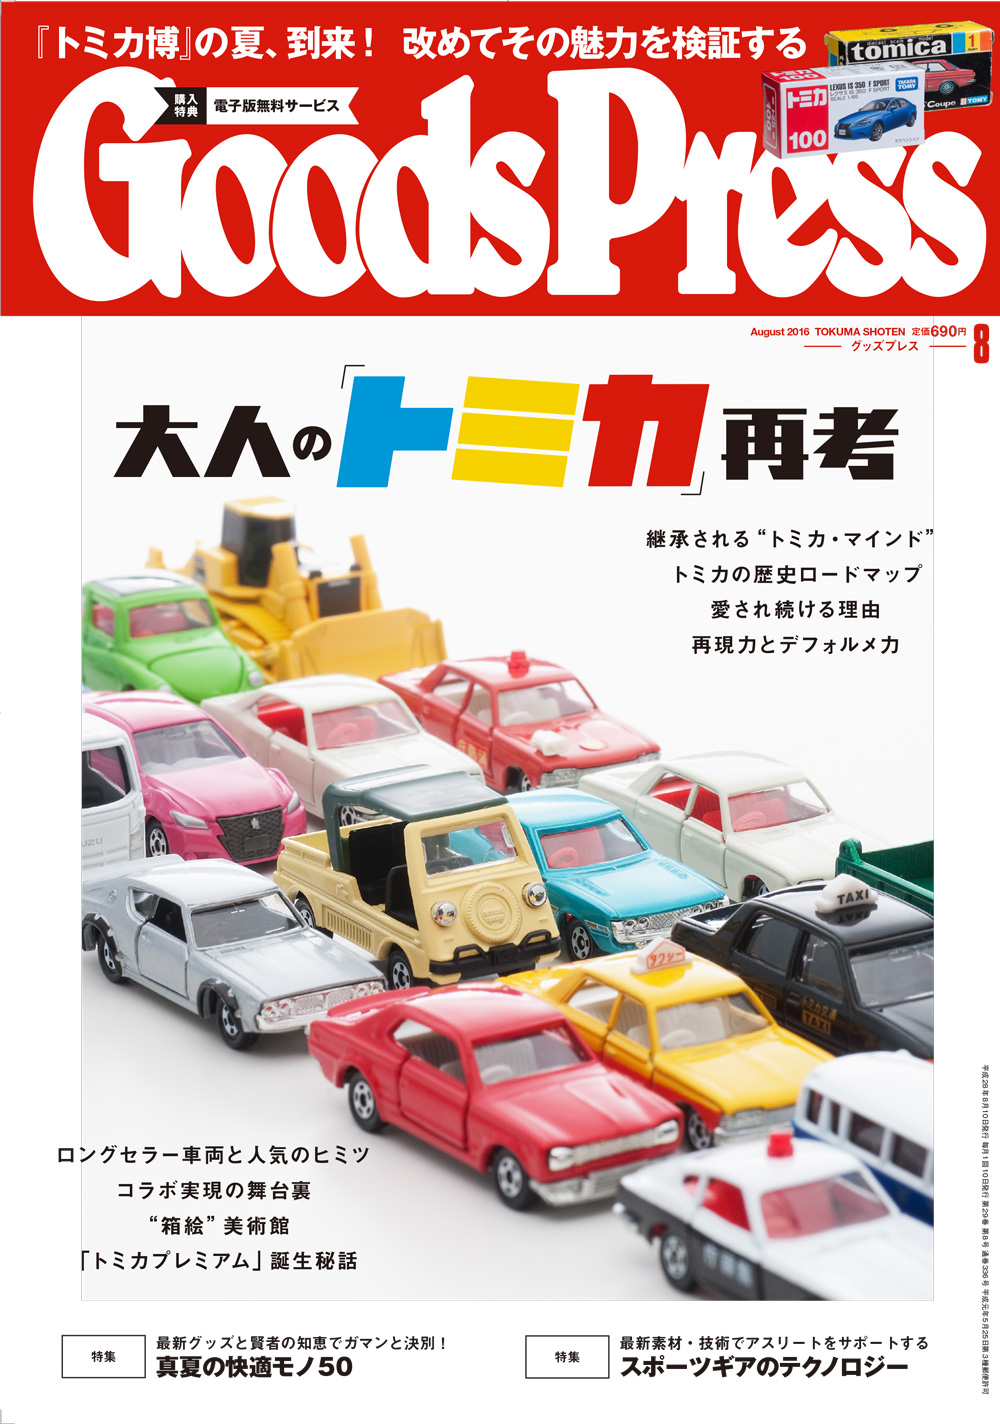 本日7 6 水 発売 Goodspress 8月号は 大人の トミカ 再考と称し 長年ミニチュアカー市場を牽引するトミカ を大特集 徳間書店のプレスリリース